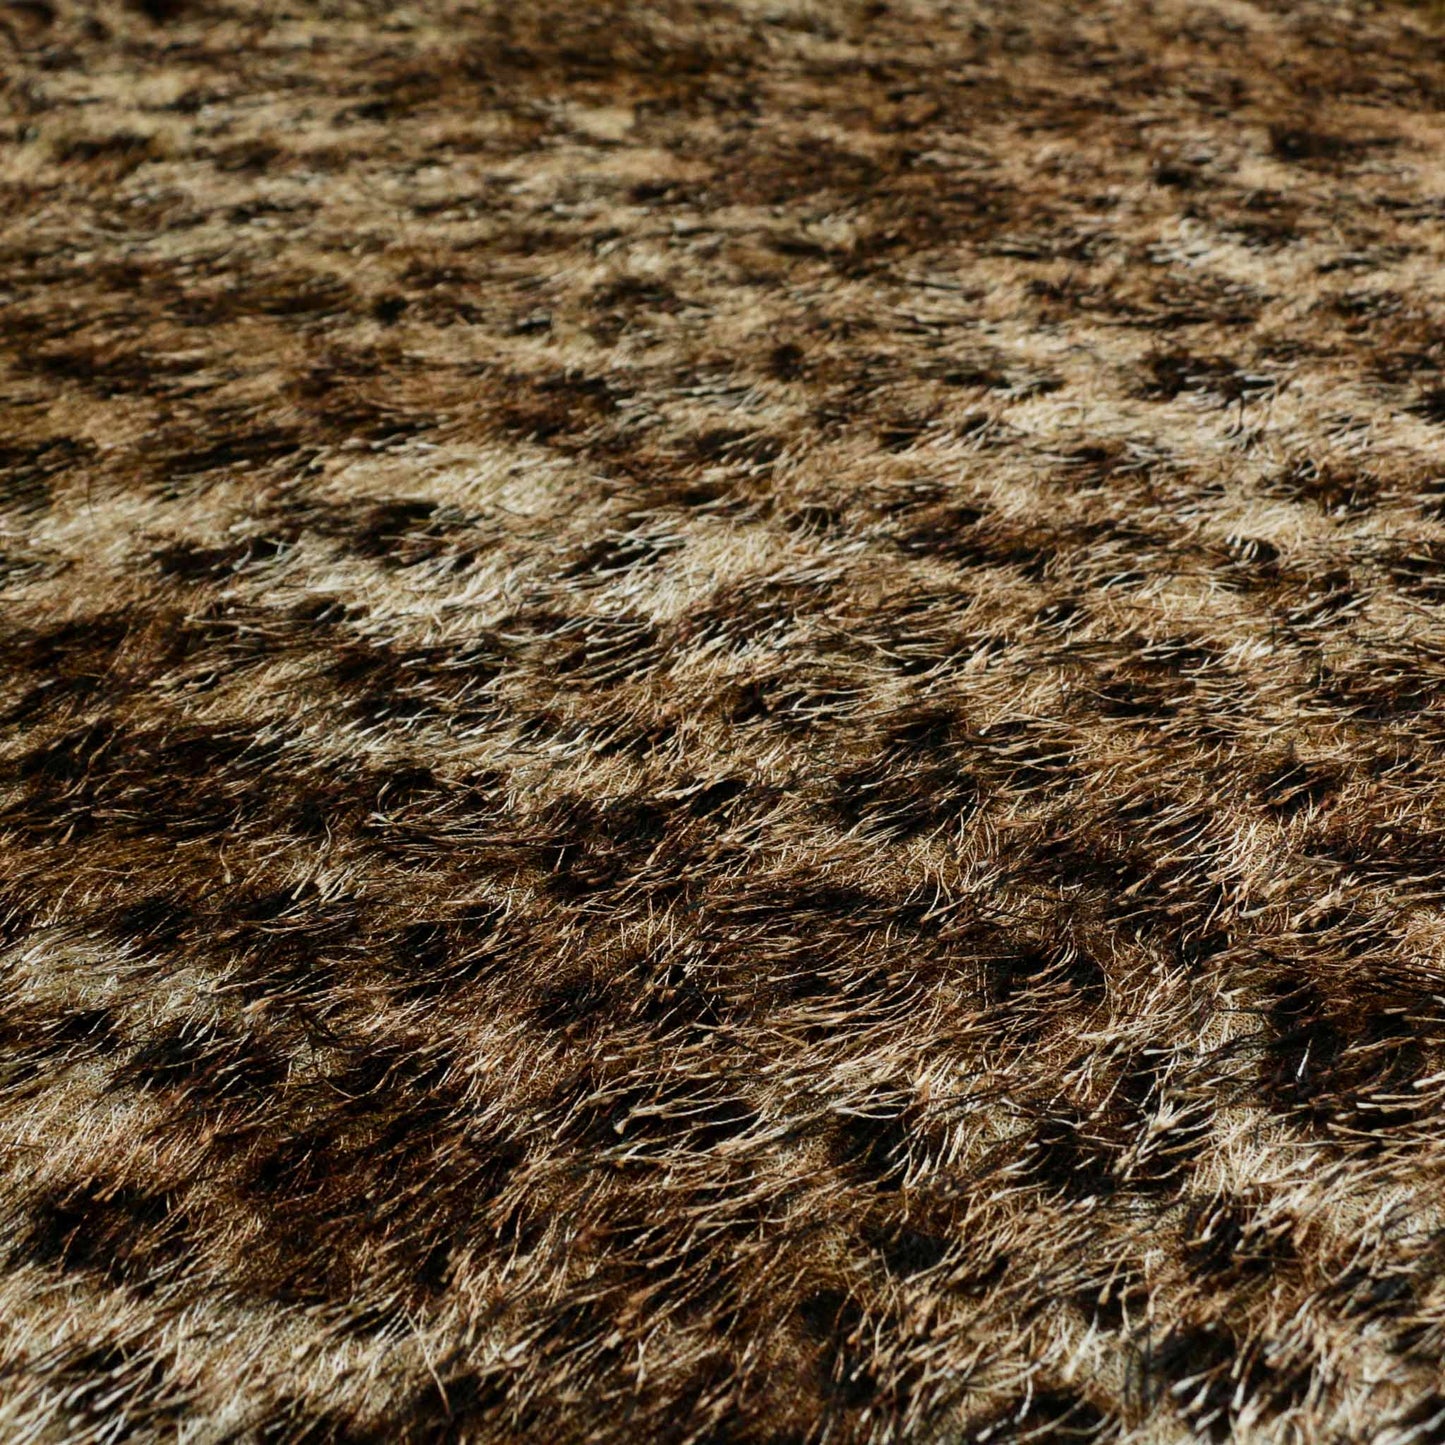 eyelash dressmaking fabric with golden brown jaguar print animal skin pattern